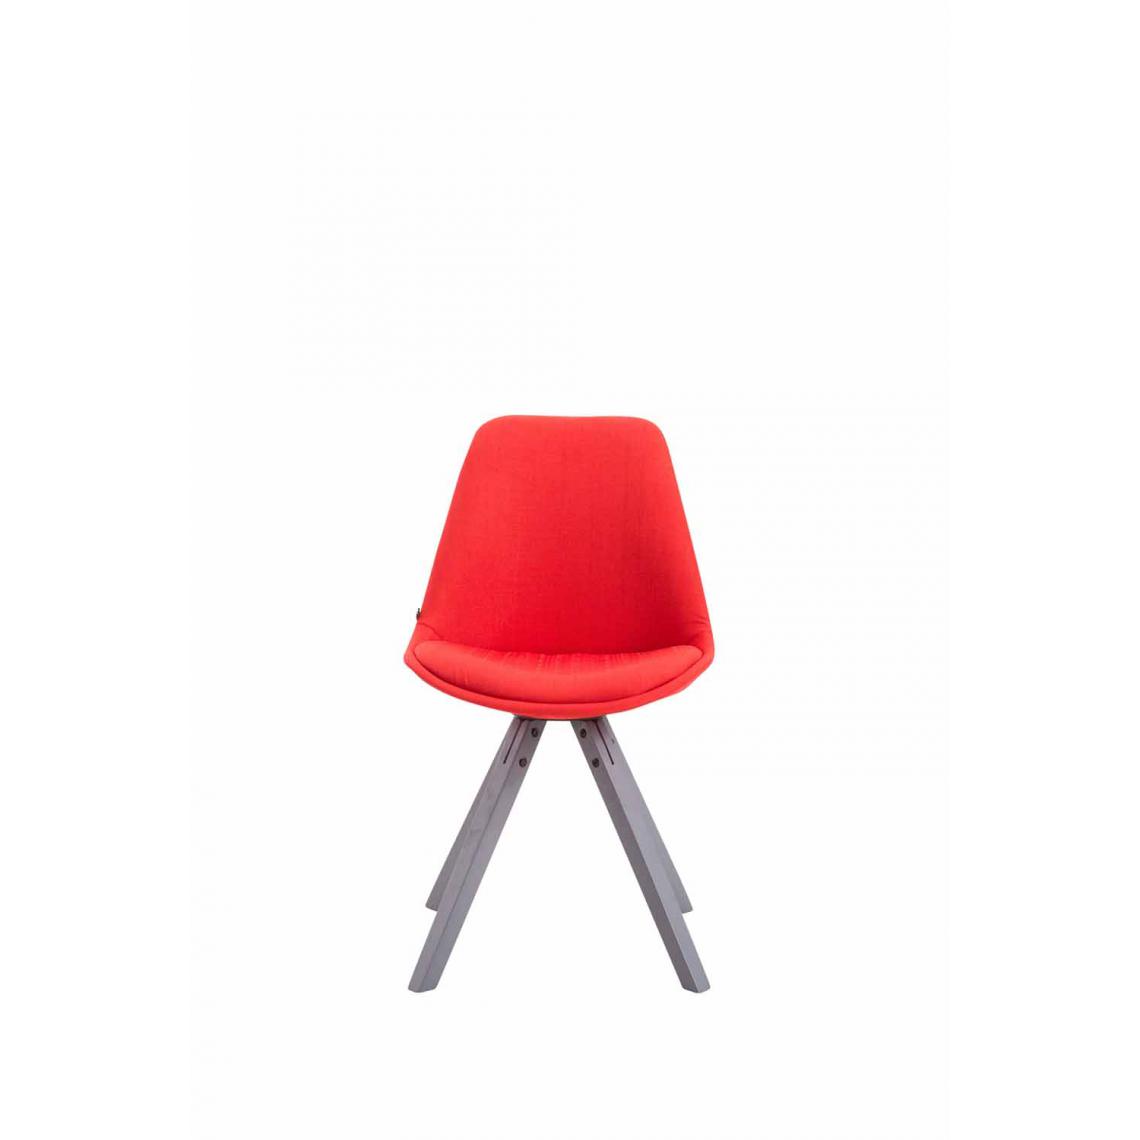 Icaverne - Esthetique Chaise visiteur tissu collection Katmandou Square gris couleur rouge - Chaises